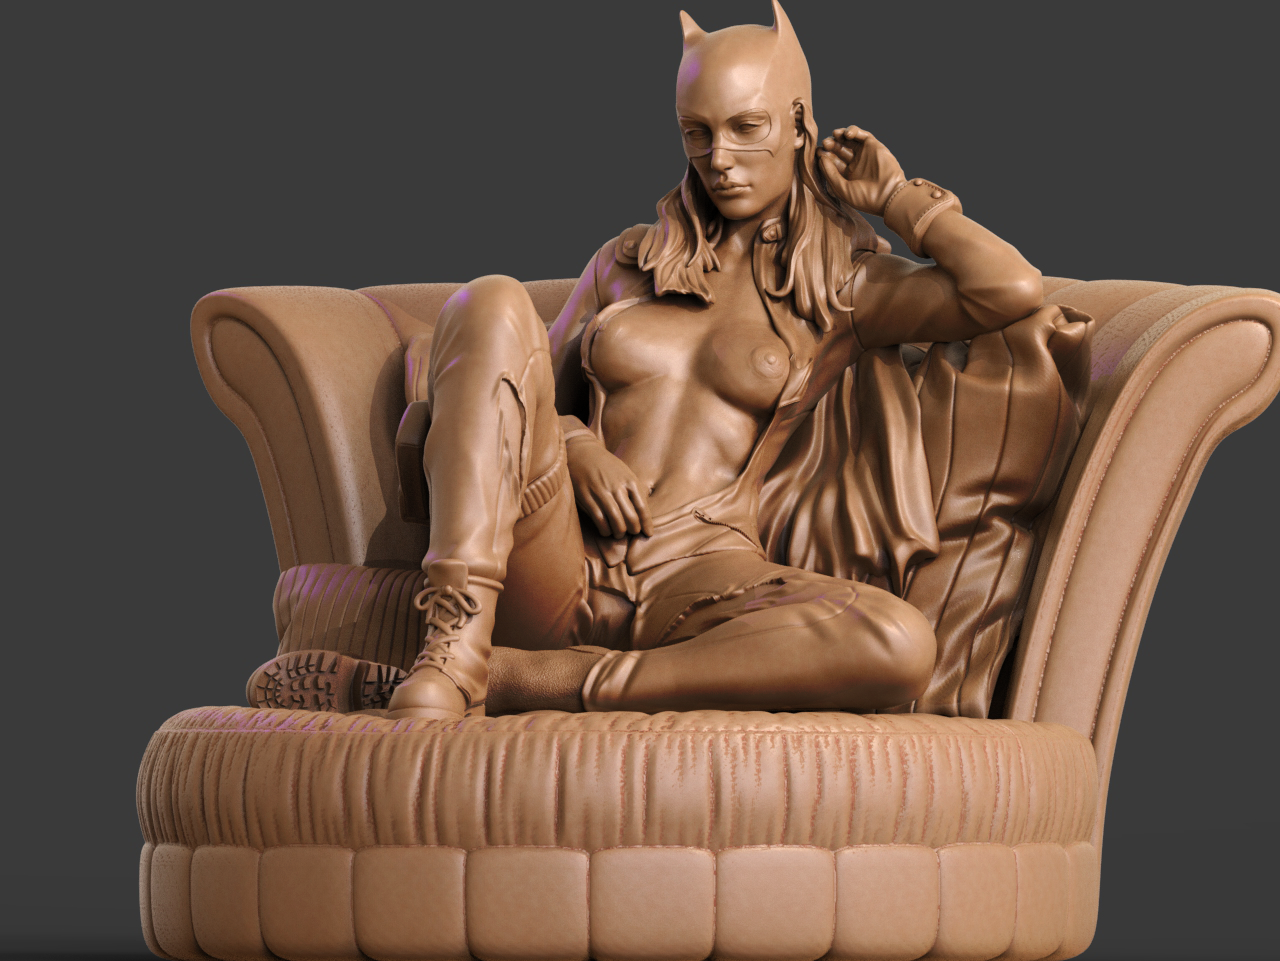 Fanart Miniatur Cetak 3D Batgirl NSFW oleh ca_3d_art Patung & Patung